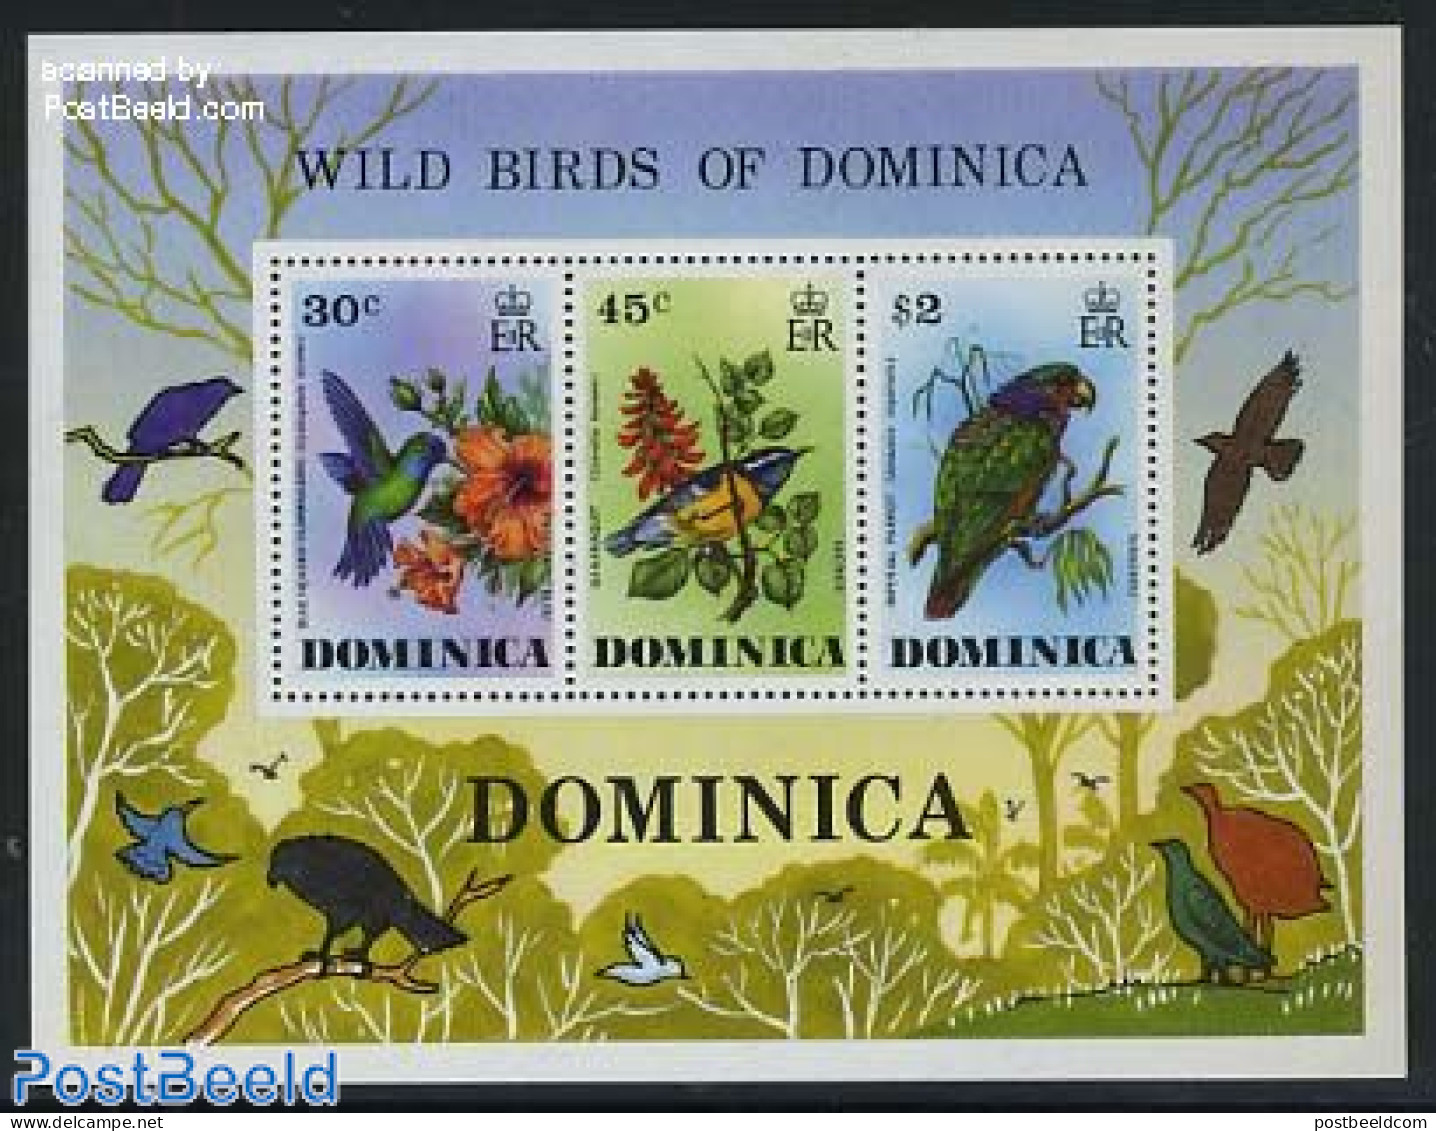 Dominica 1976 Birds S/s, Mint NH, Nature - Birds - Hummingbirds - Dominikanische Rep.